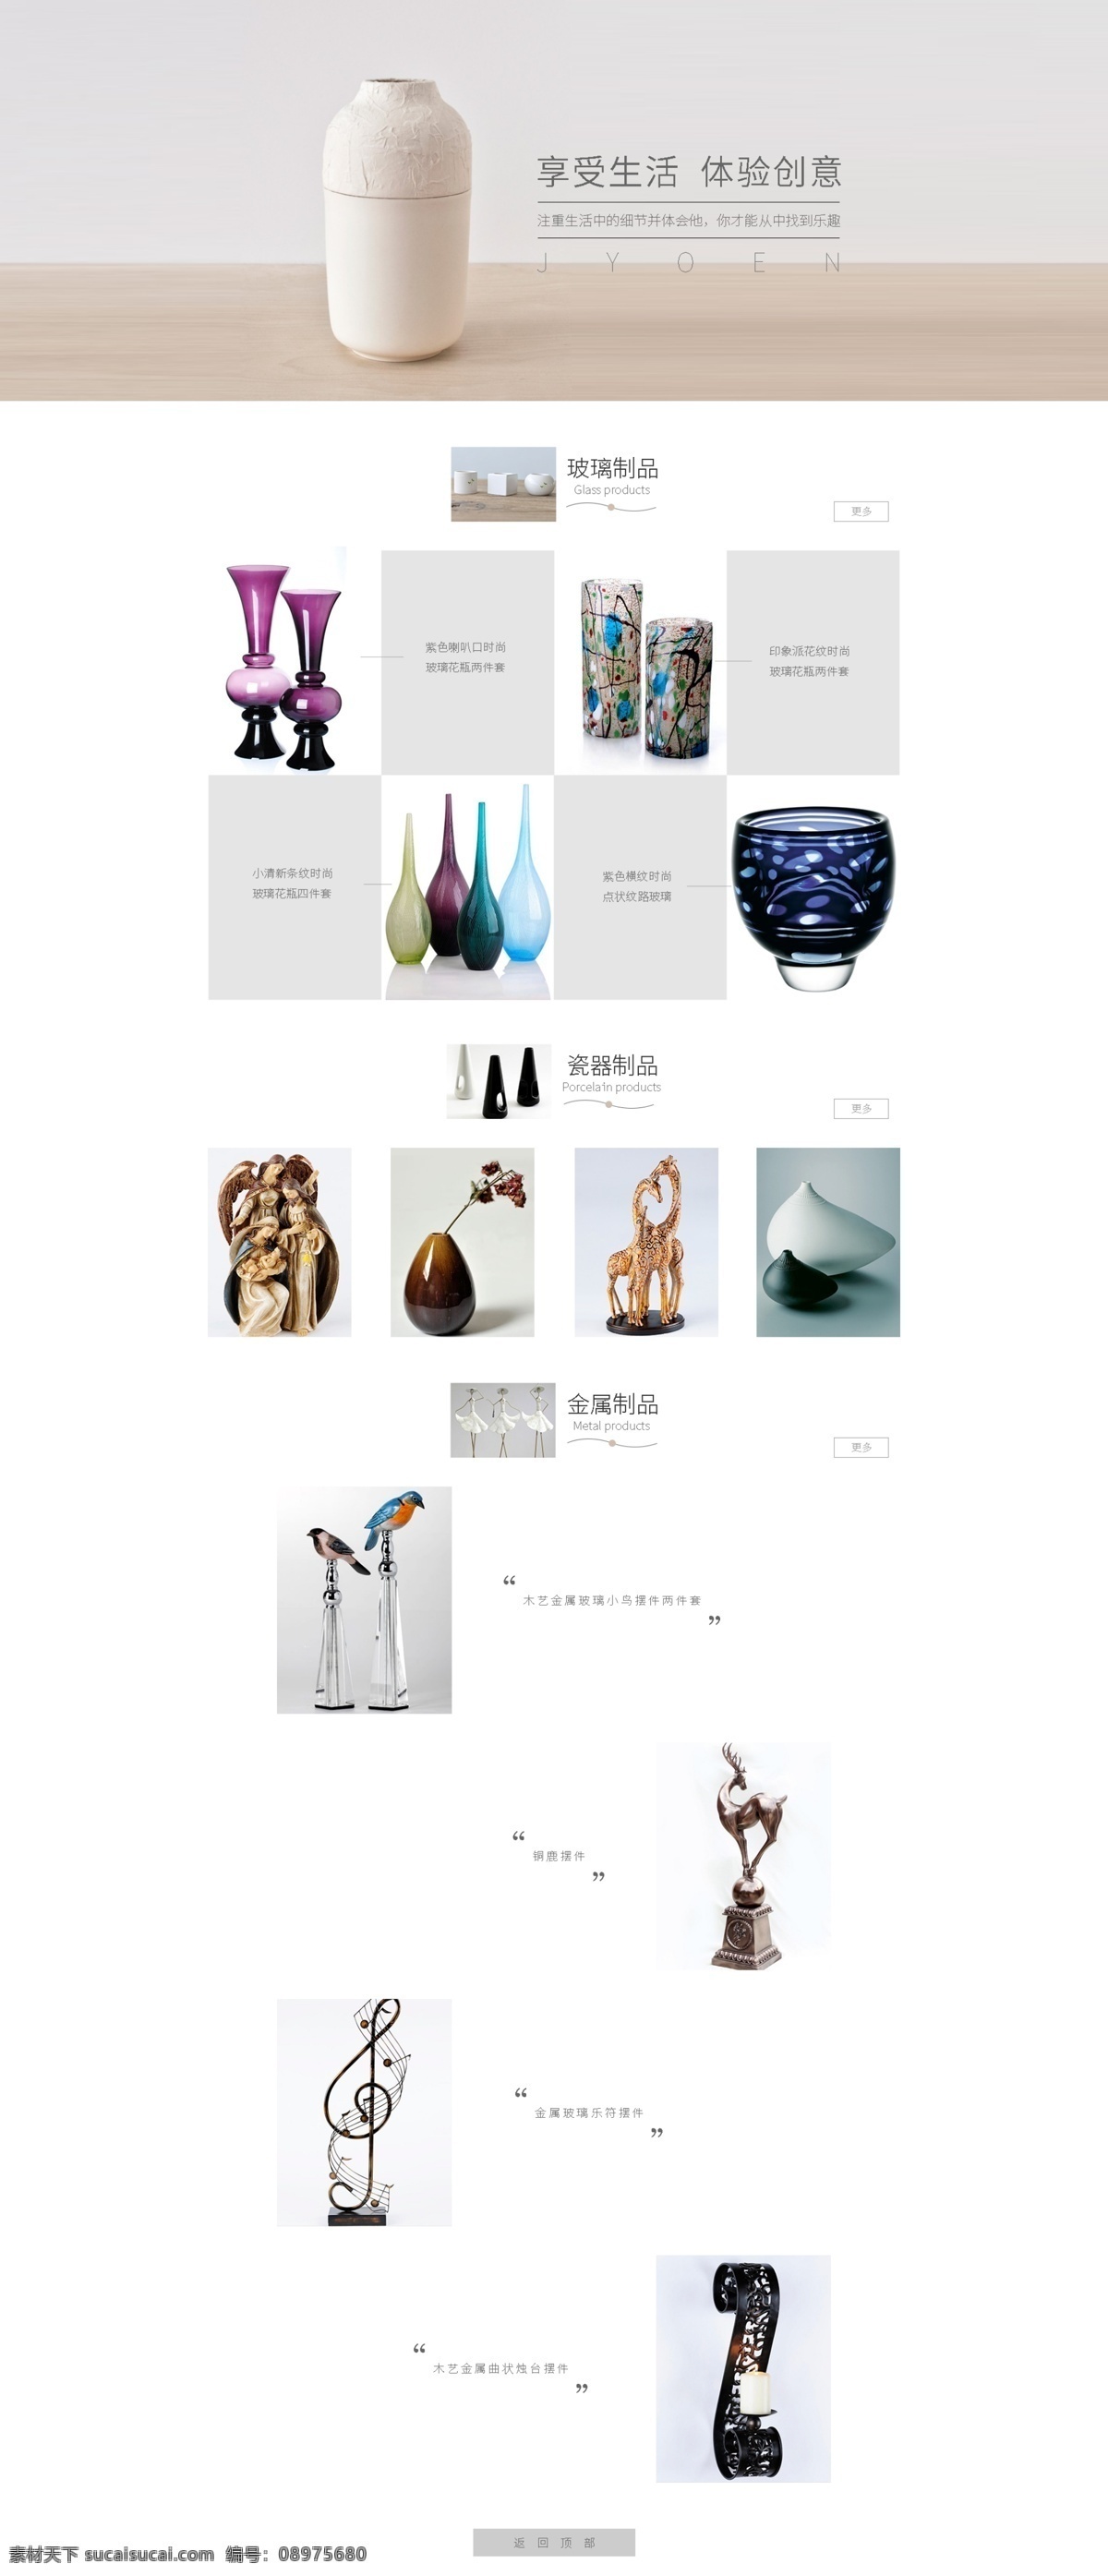 简约 瓷器 专题 网页素材 瓷器摆件 简约风 风格简单 陶瓷 装饰物